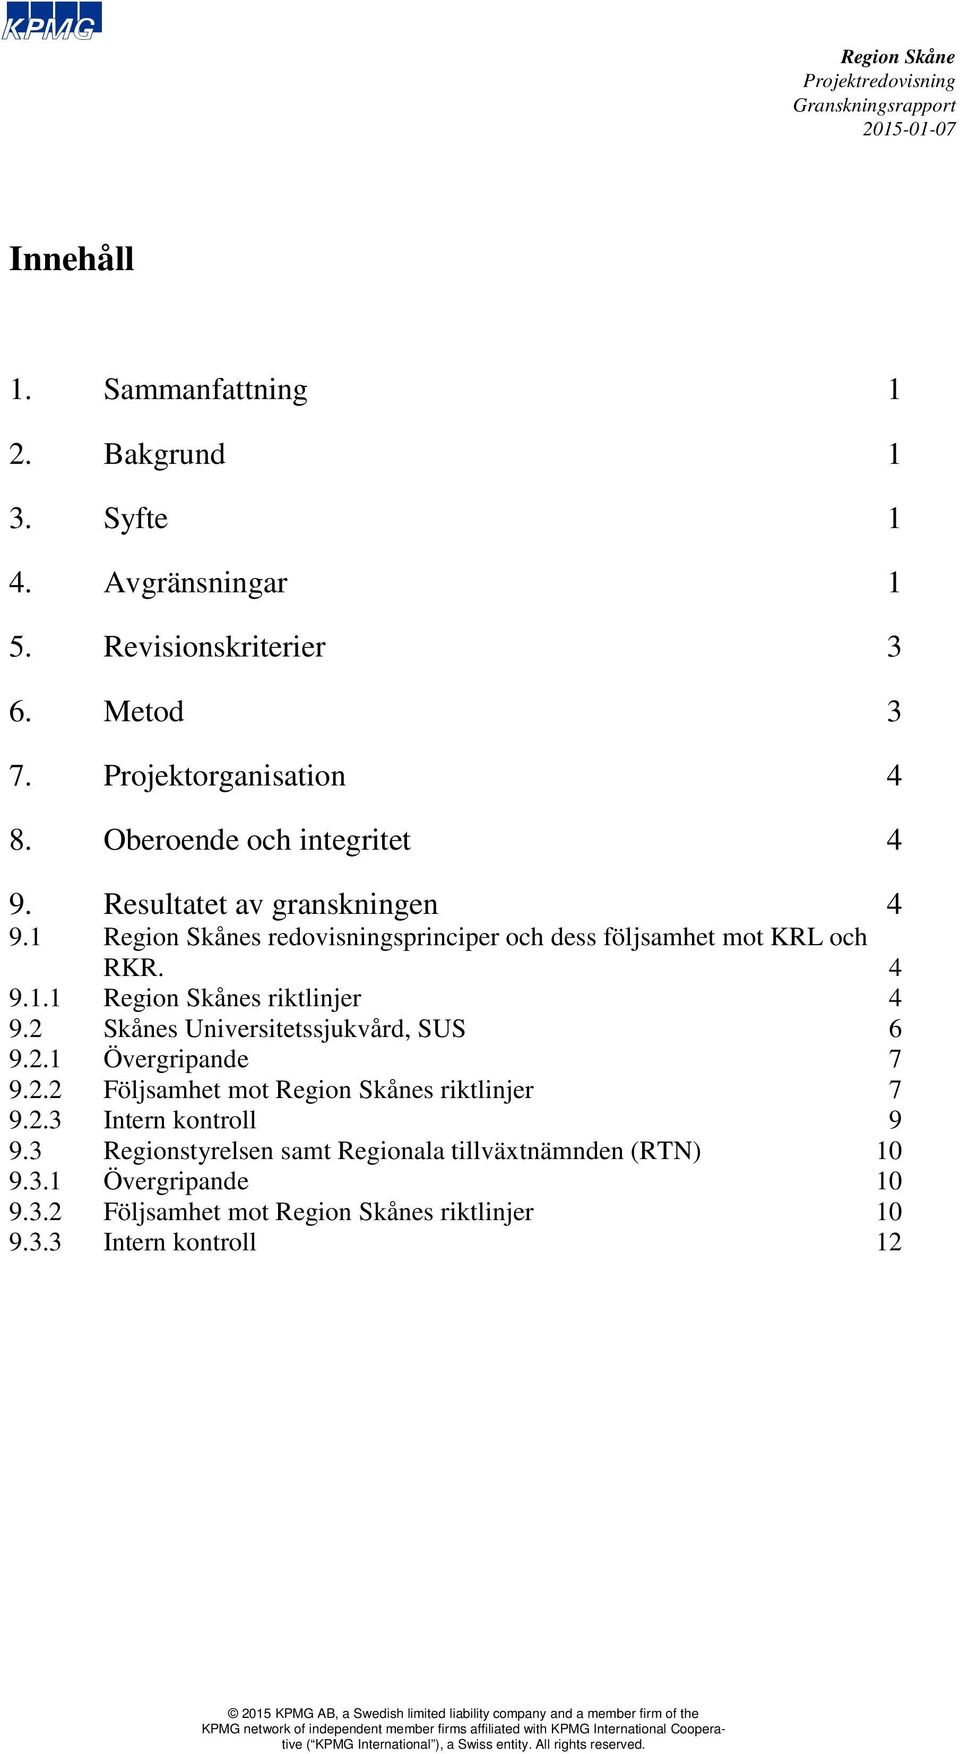 2 Skånes Universitetssjukvård, SUS 6 9.2.1 Övergripande 7 9.2.2 Följsamhet mot s riktlinjer 7 9.2.3 Intern kontroll 9 9.